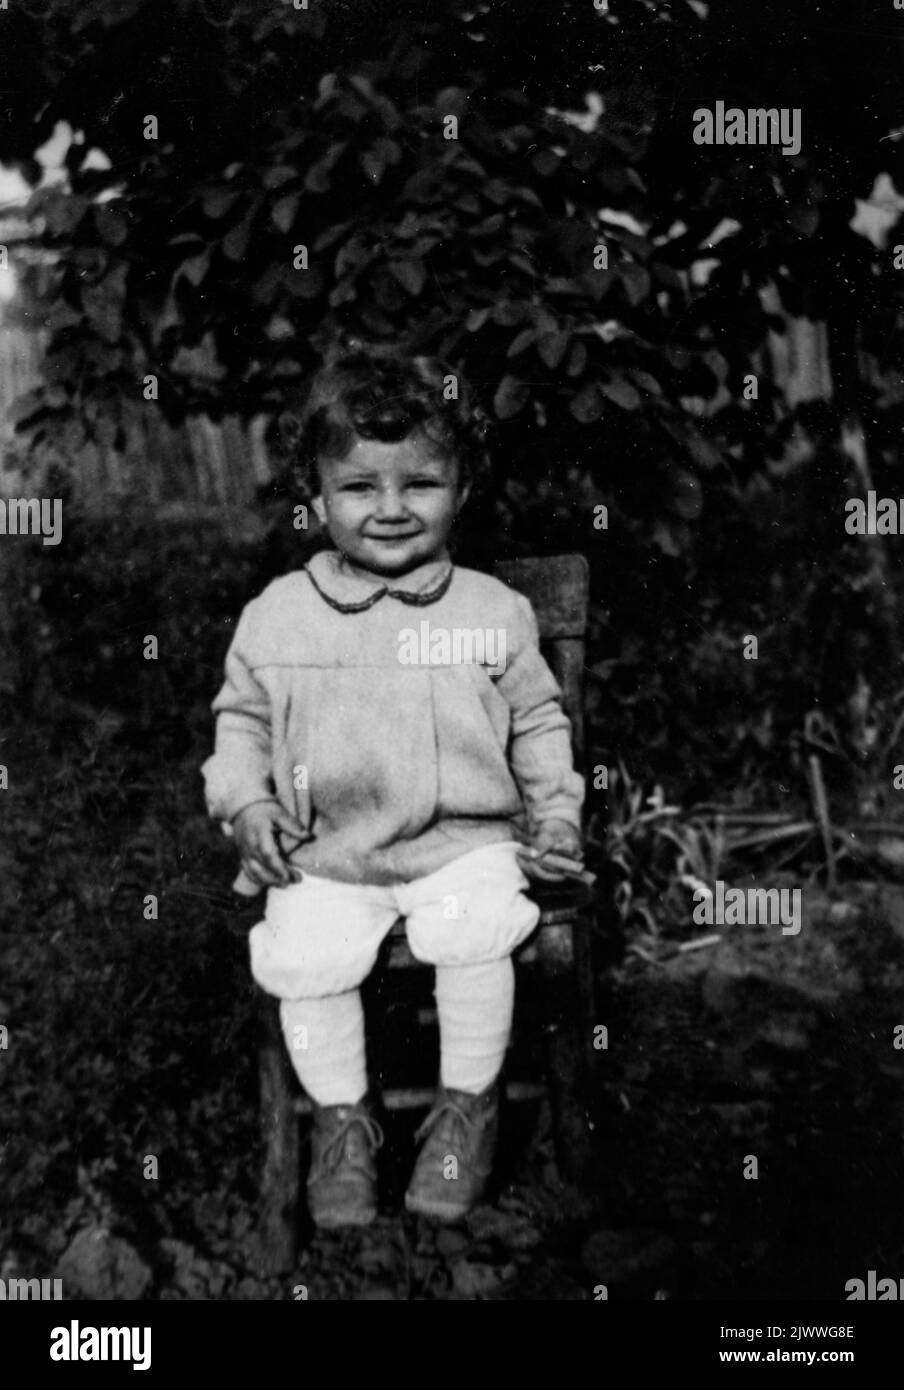 Schwarz-Weiß-Porträt eines 3 Jahre alten lächelnden Mädchens, das auf einem Stuhl in ländlicher Umgebung sitzt, Ende 60s, Bulgarien, Europa, Balkan Stockfoto